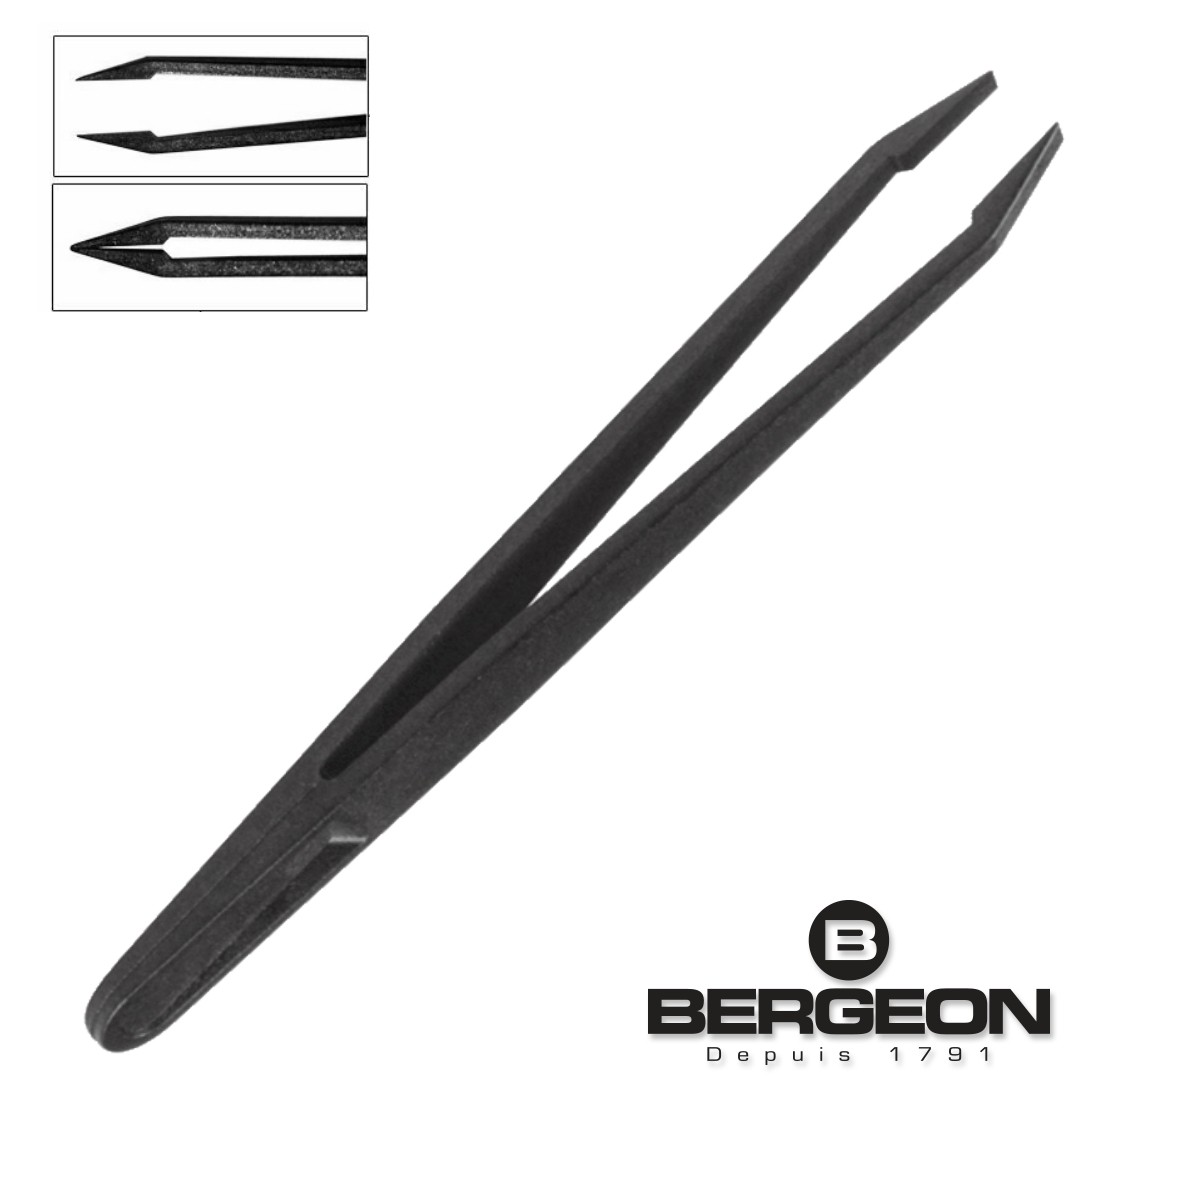 Bergeon ESD Carbon Fiber Tweezers 6751-S, 3 Piece Set